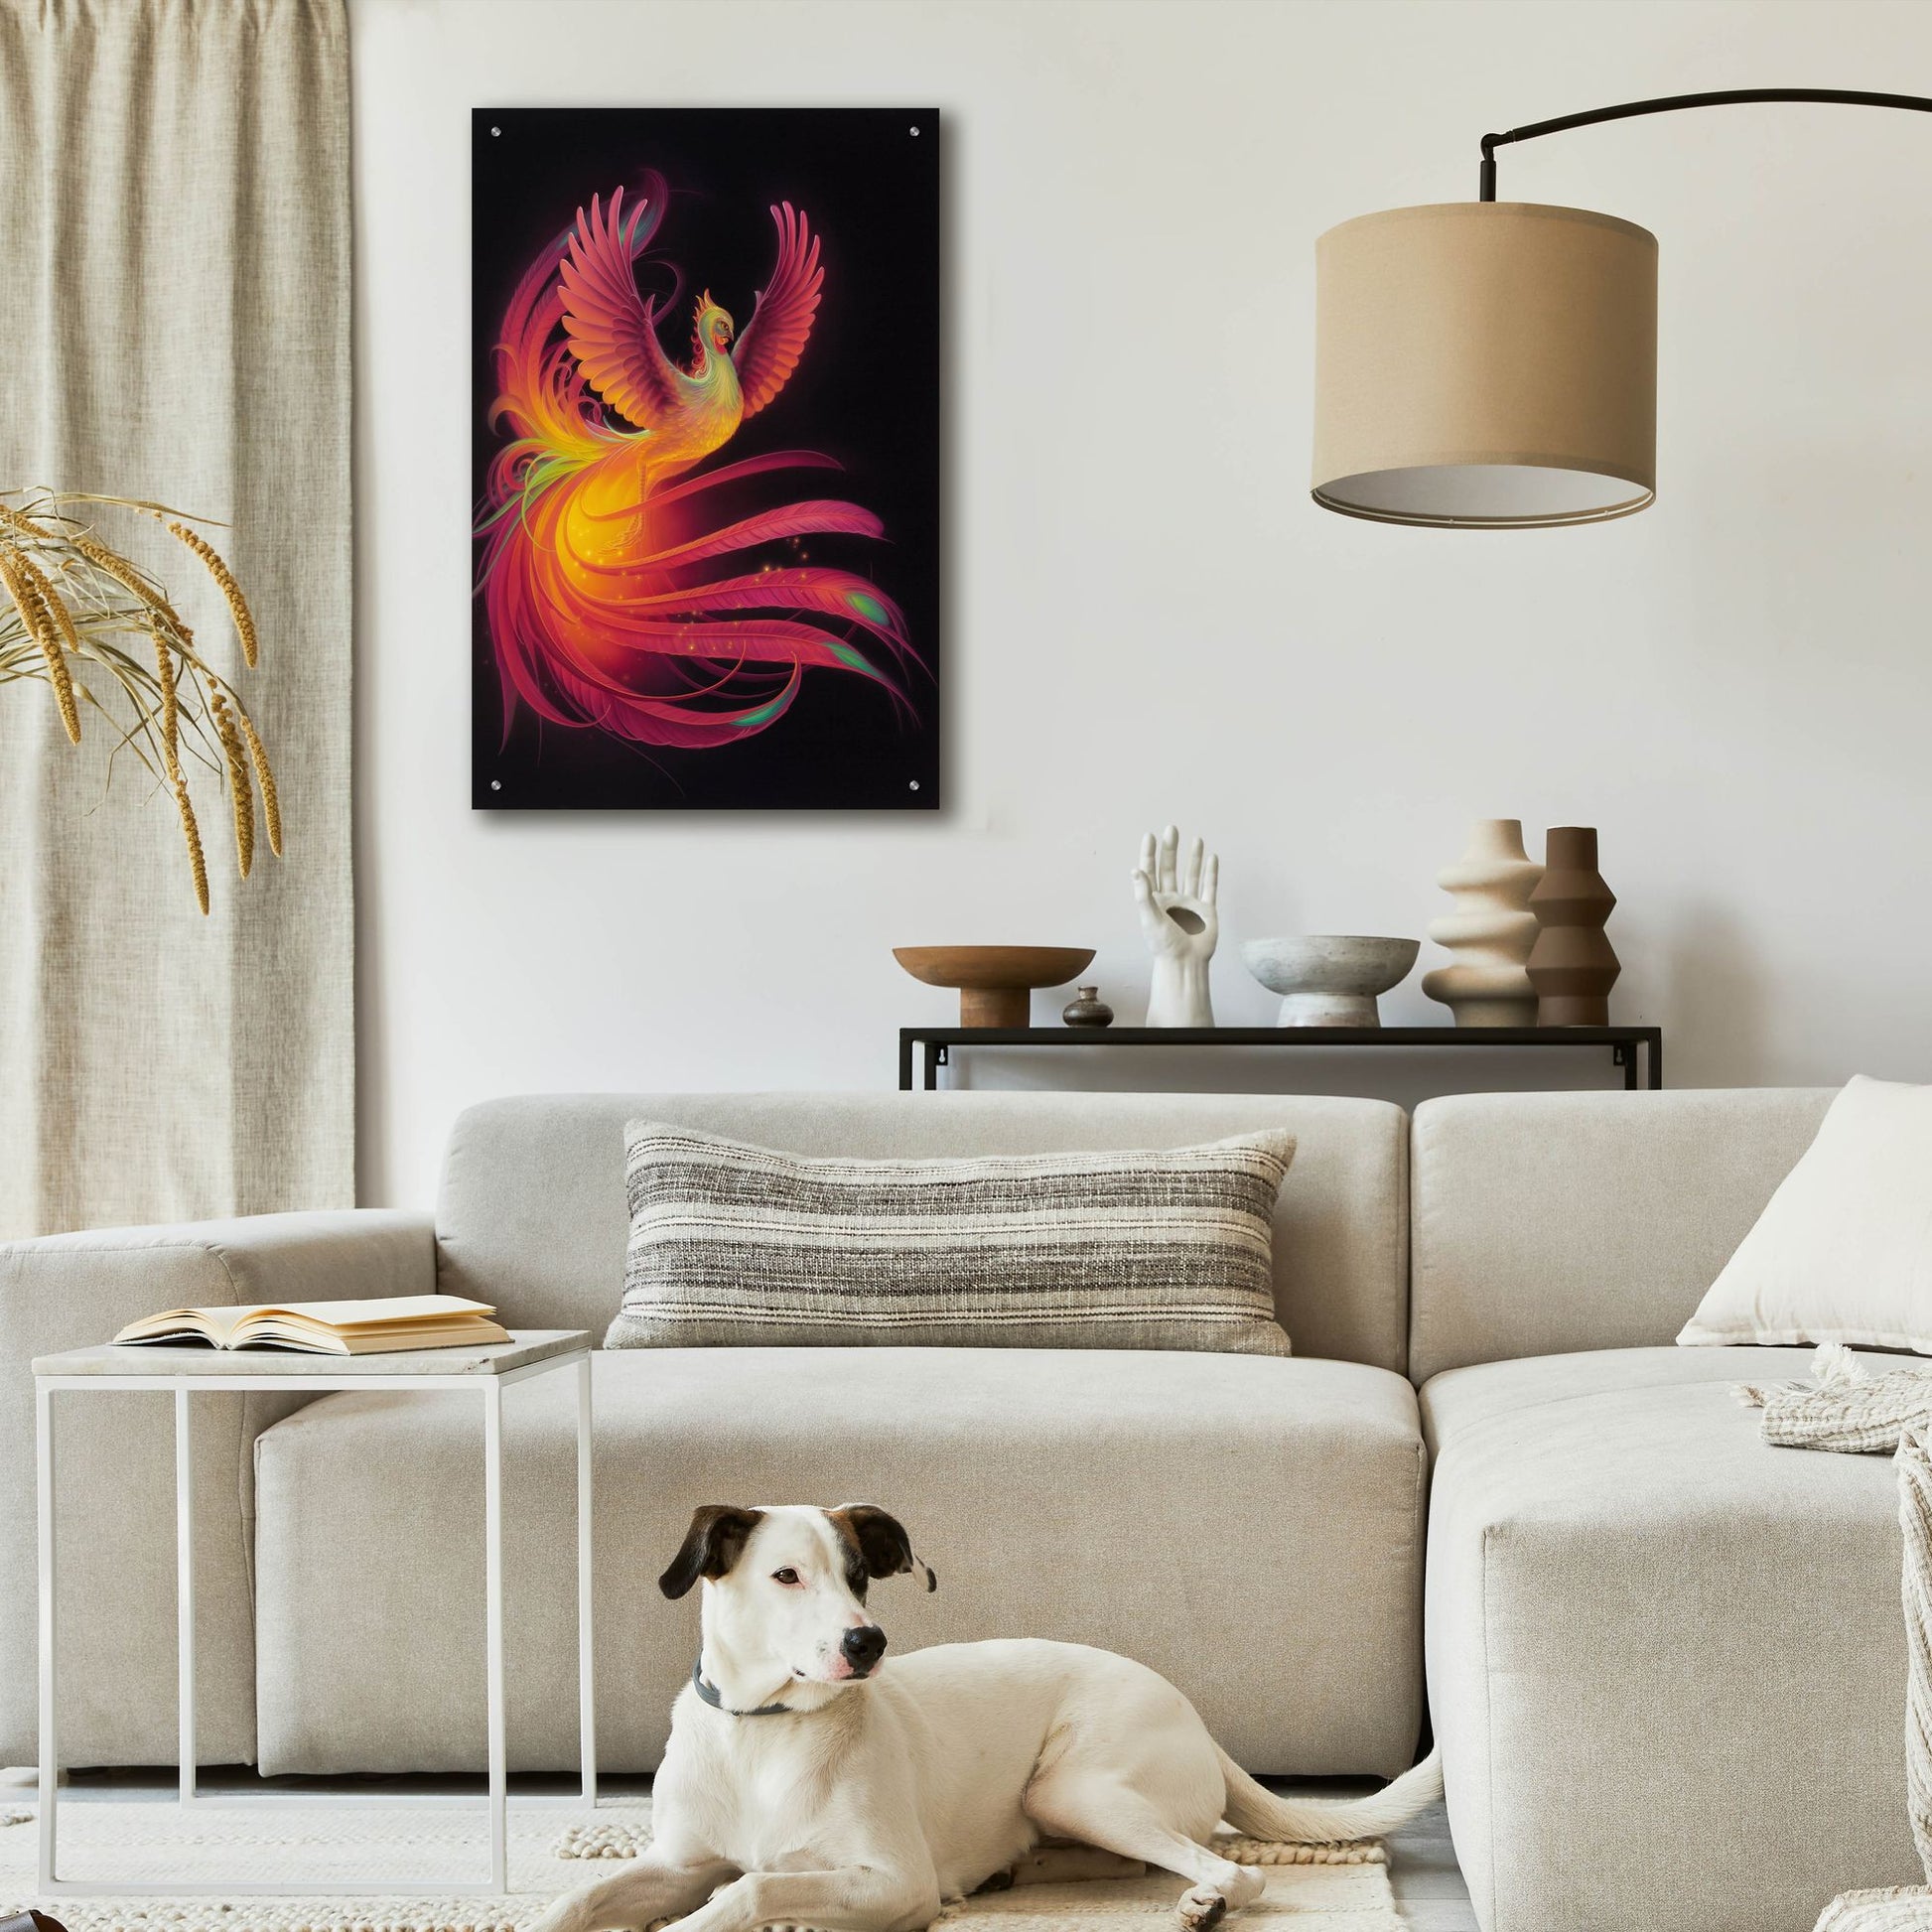 Epic Art 'Phoenix' by Kirk Reinert, Acrylic Glass Wall Art,24x36